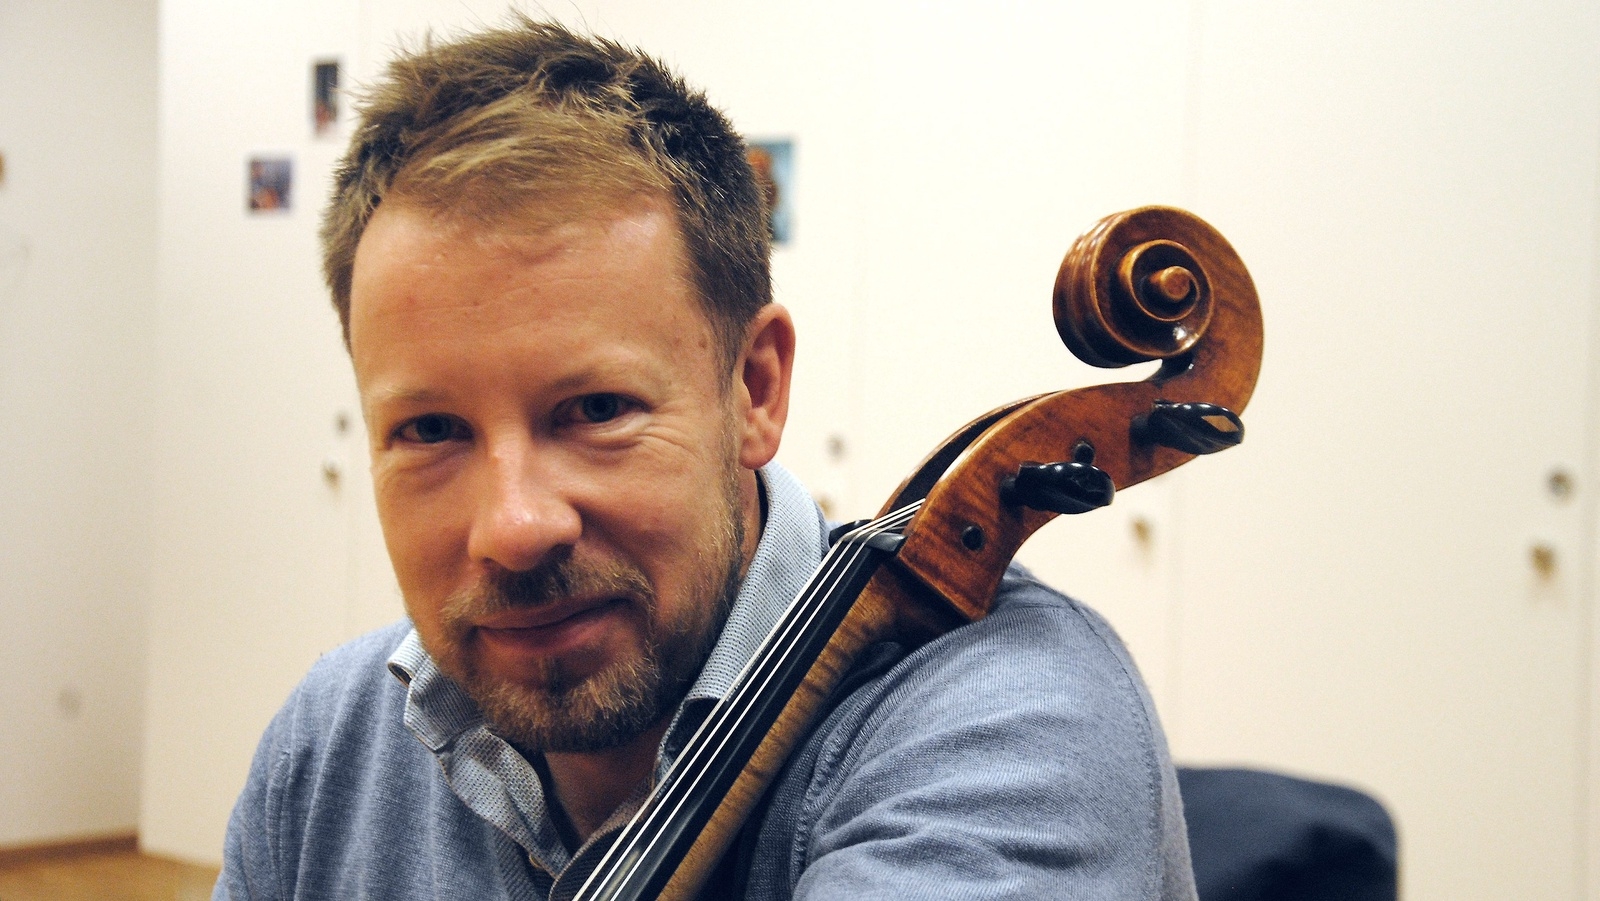 Många stråkmusiker vill spela på riktigt gamla instrument – Samuli Örnströmer har valt att spela på en nytillverkad cello.
Foto: Håkan Jacobsson